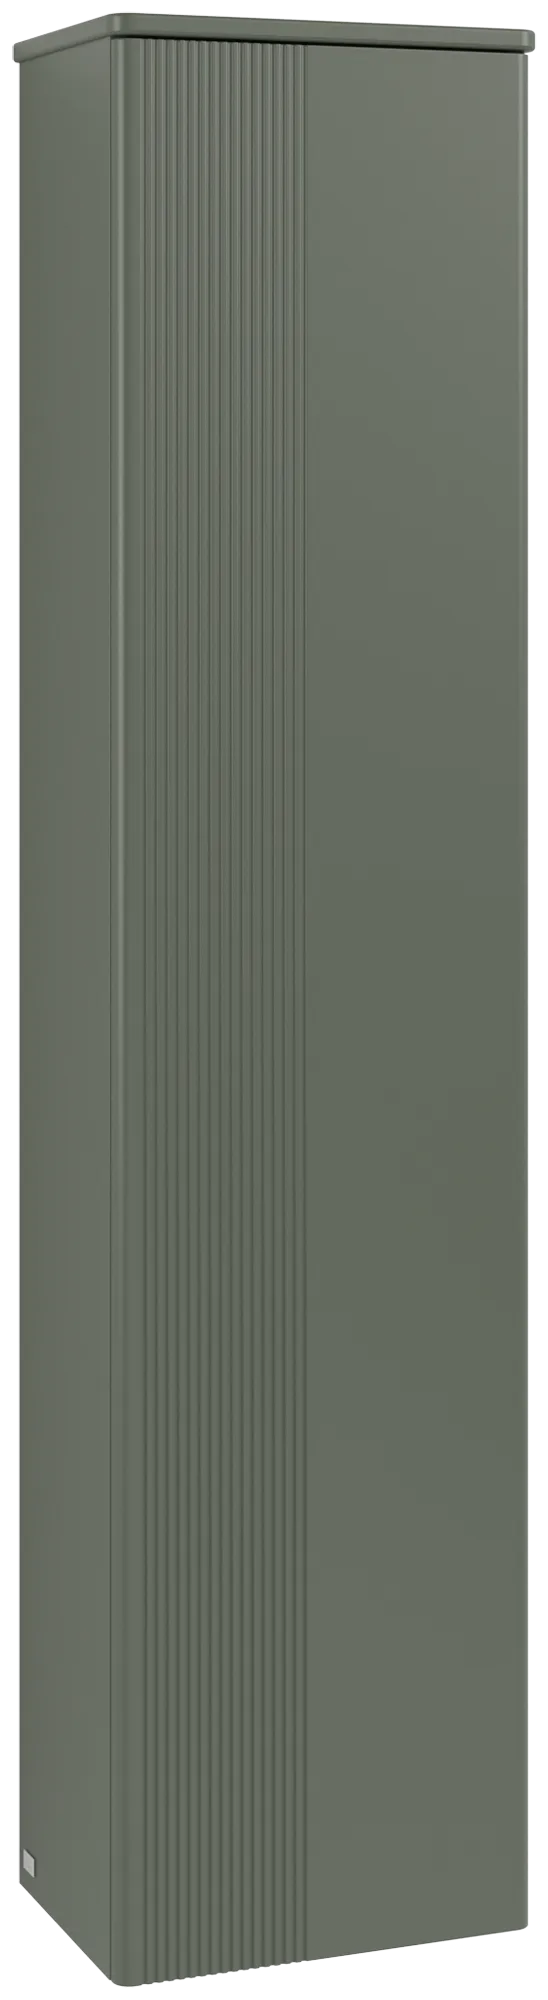 Bild von VILLEROY BOCH Antao Hochschrank, 1 Tür, 414 x 1719 x 287 mm, Front mit Struktur, Leaf Green Matt Lacquer / Leaf Green Matt Lacquer #K46100HL